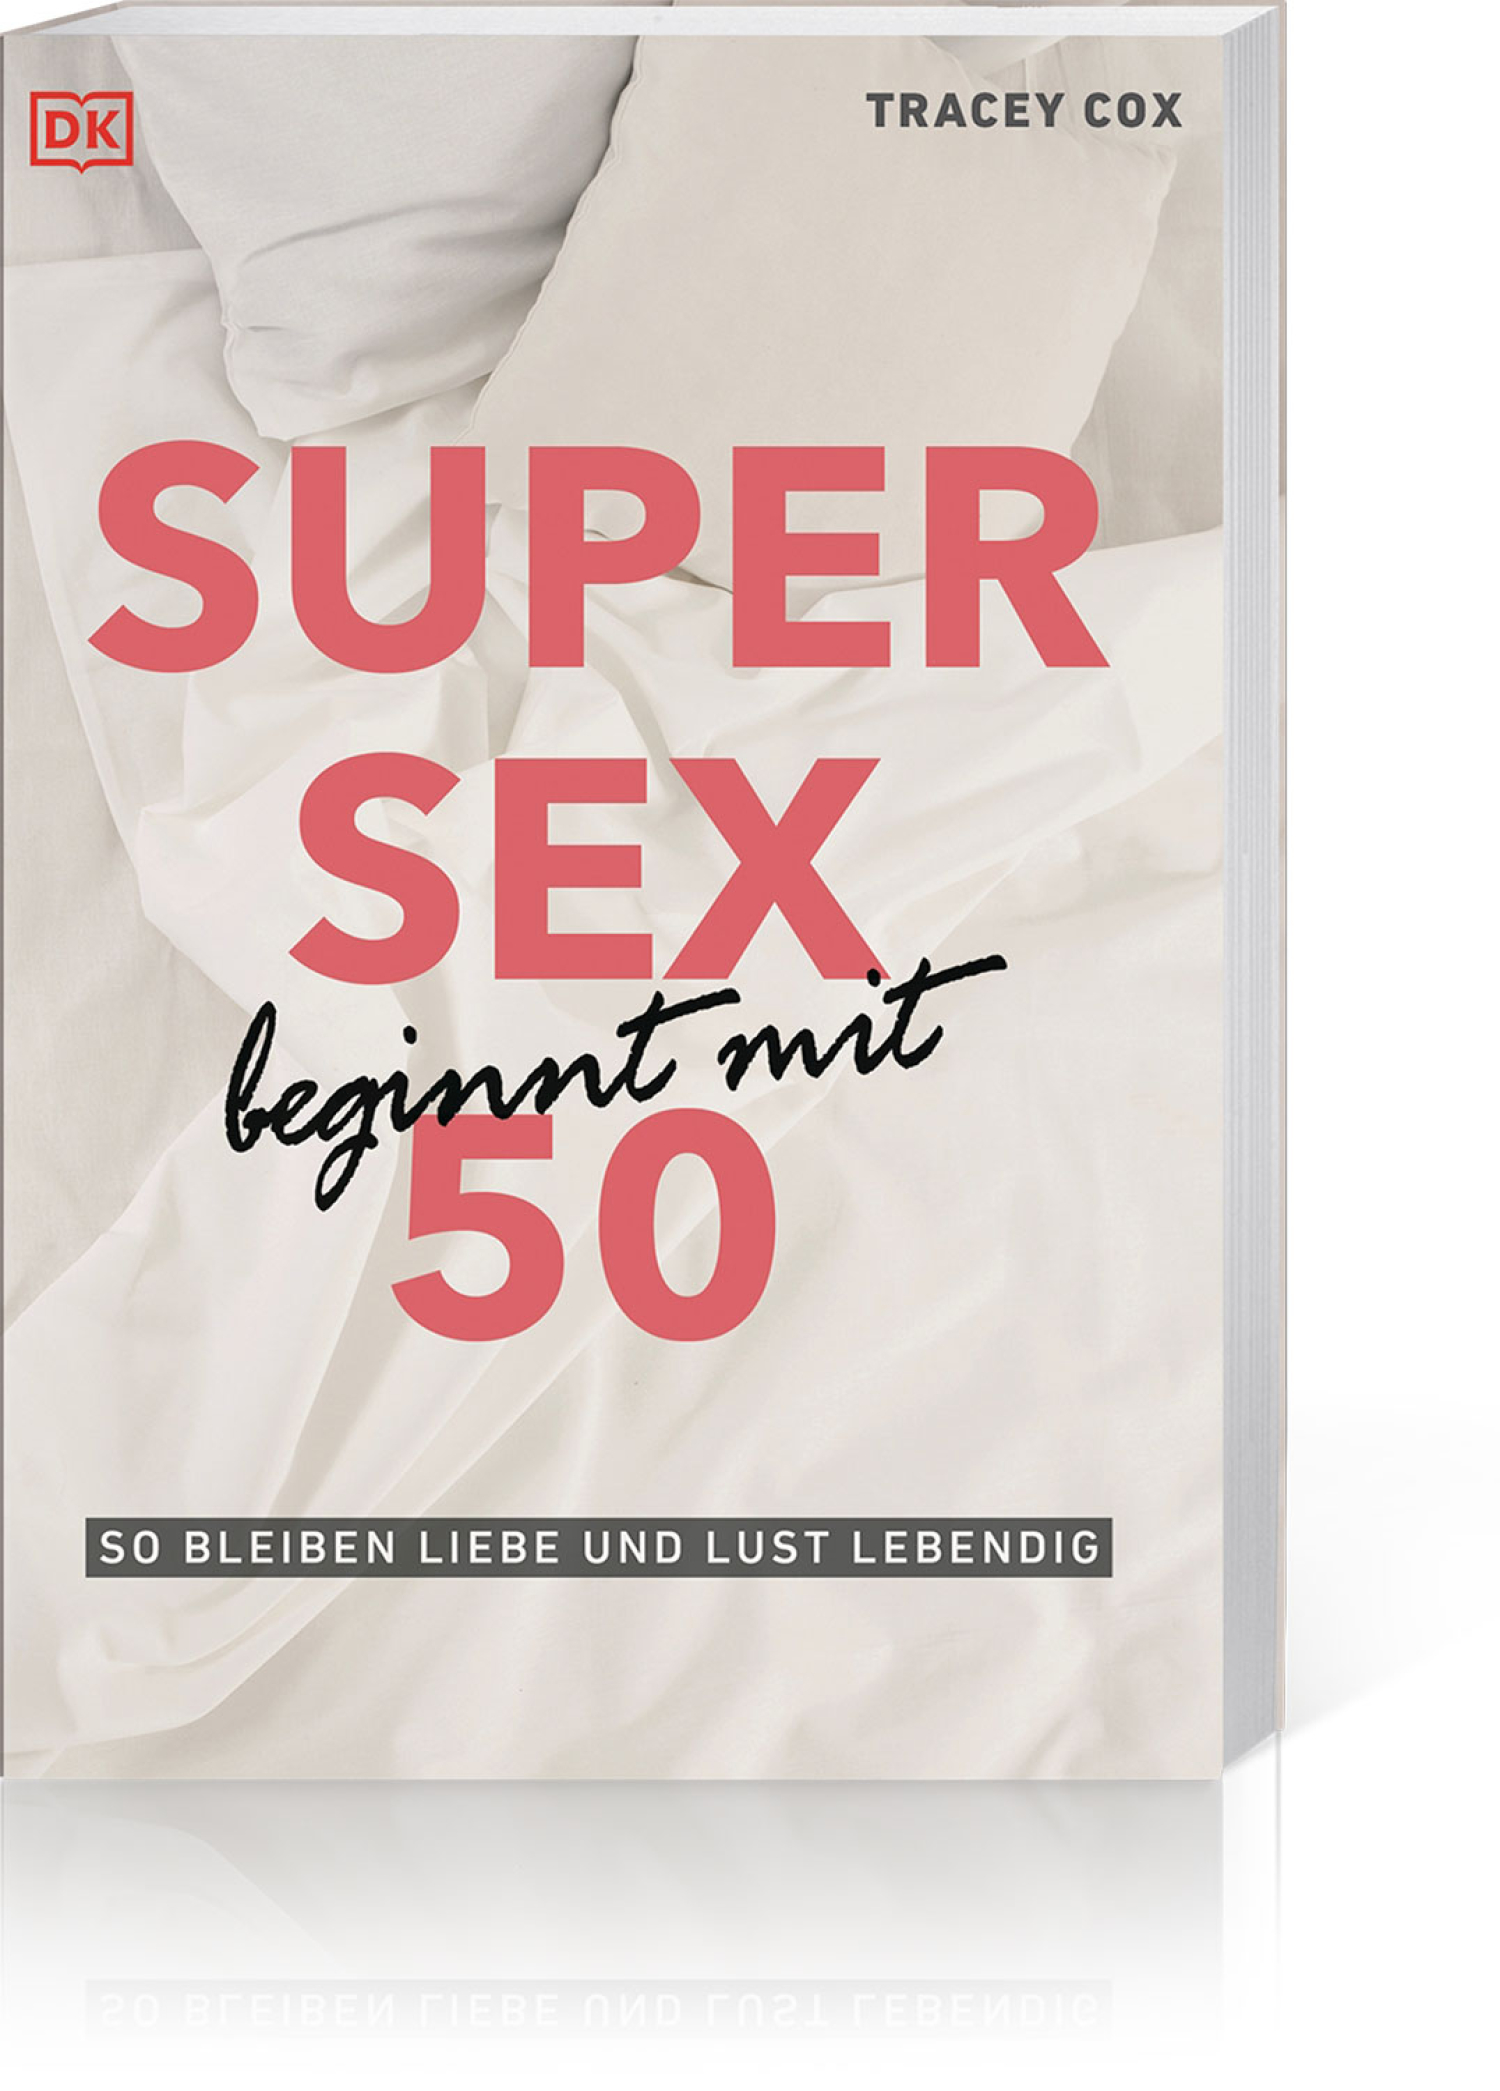 Super Sex beginnt mit 50, Produktbild 1